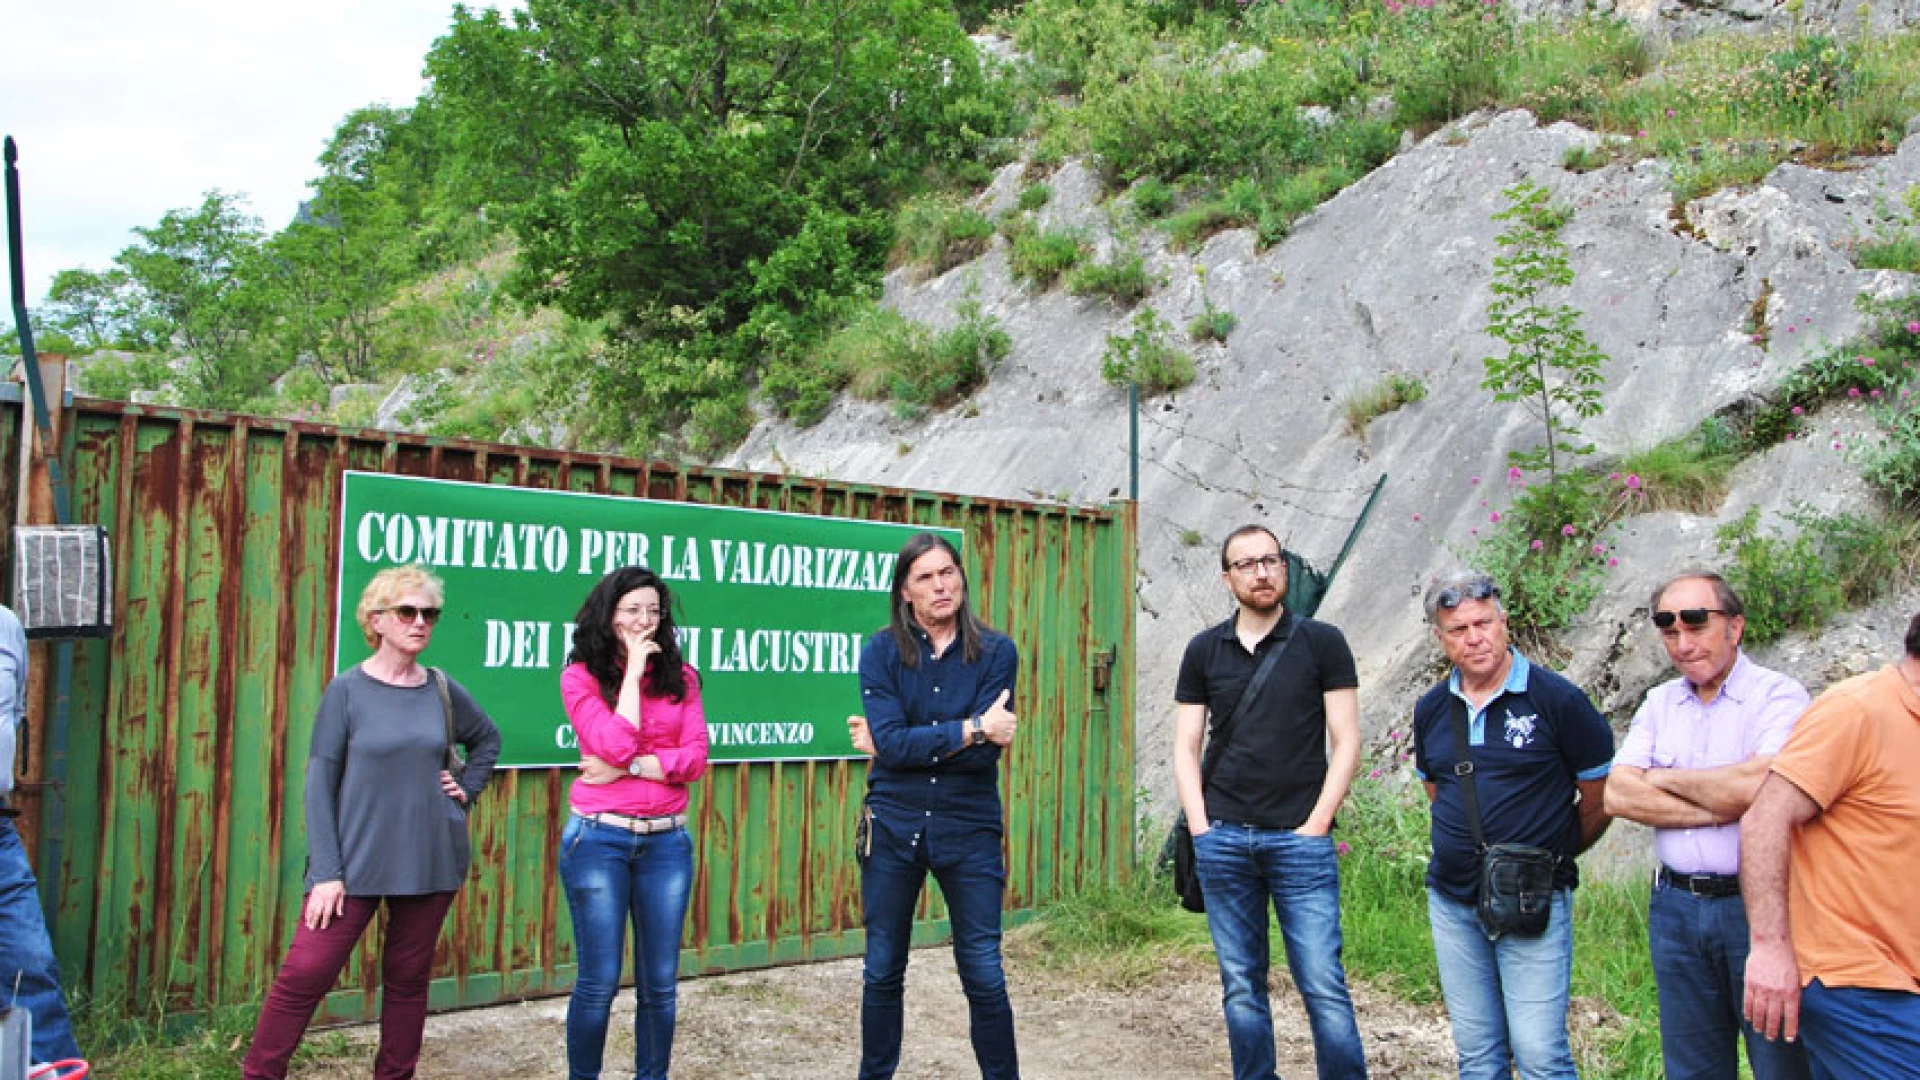 Castel San Vincenzo: la mobilitazione del comitato per la valorizzazione  dei rifiuti lacustri continua. Sabato 3 giugno protesta pubblica in prossimità del campeggio.